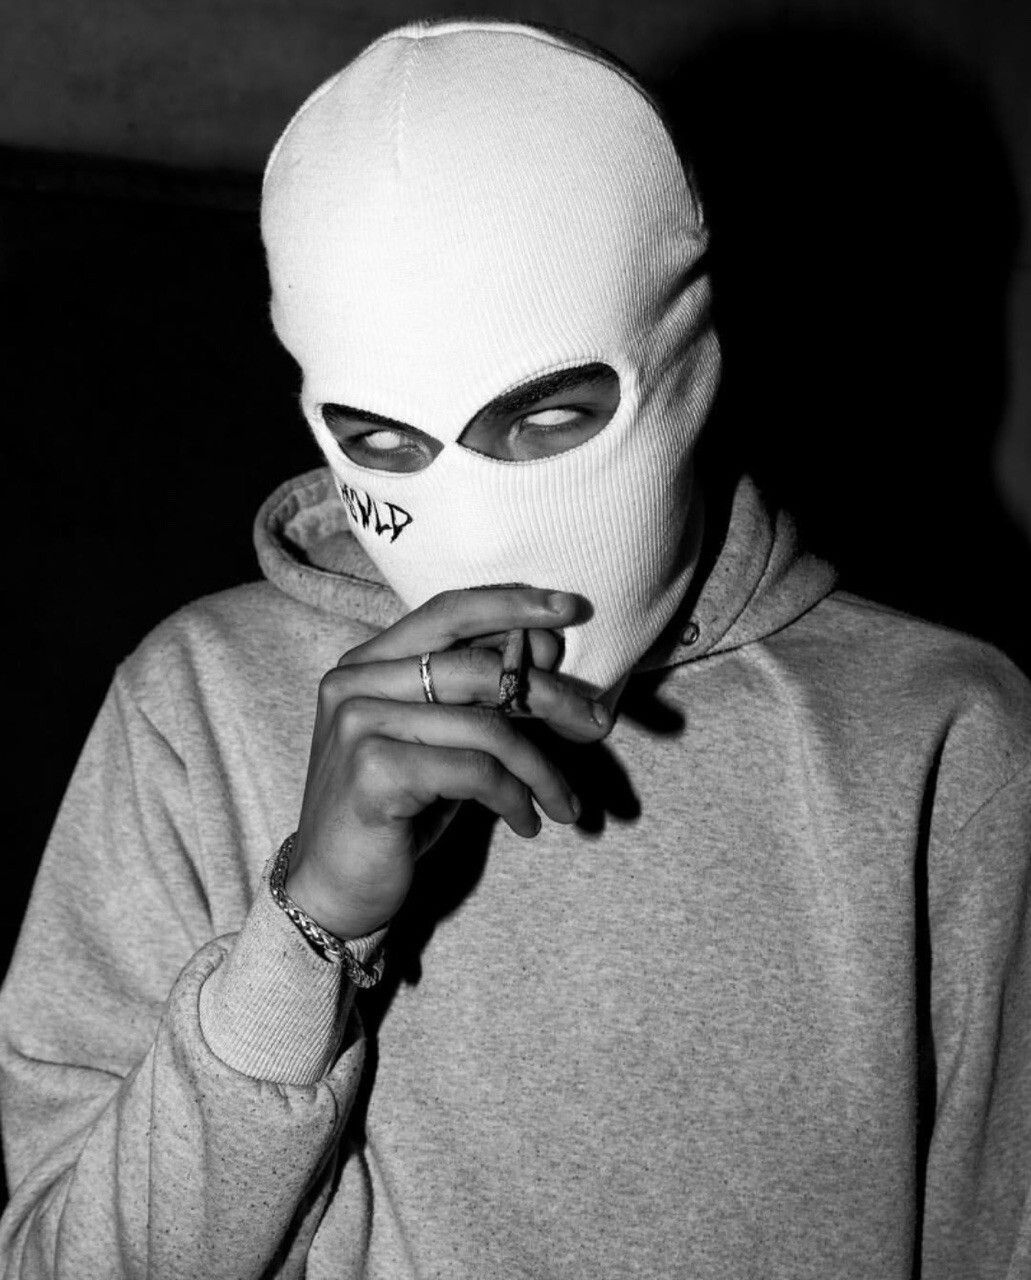 Ski Mask Aesthetic Gangster Pfp Gangsta Ski Mask Aesthetic Pfp | Images ...